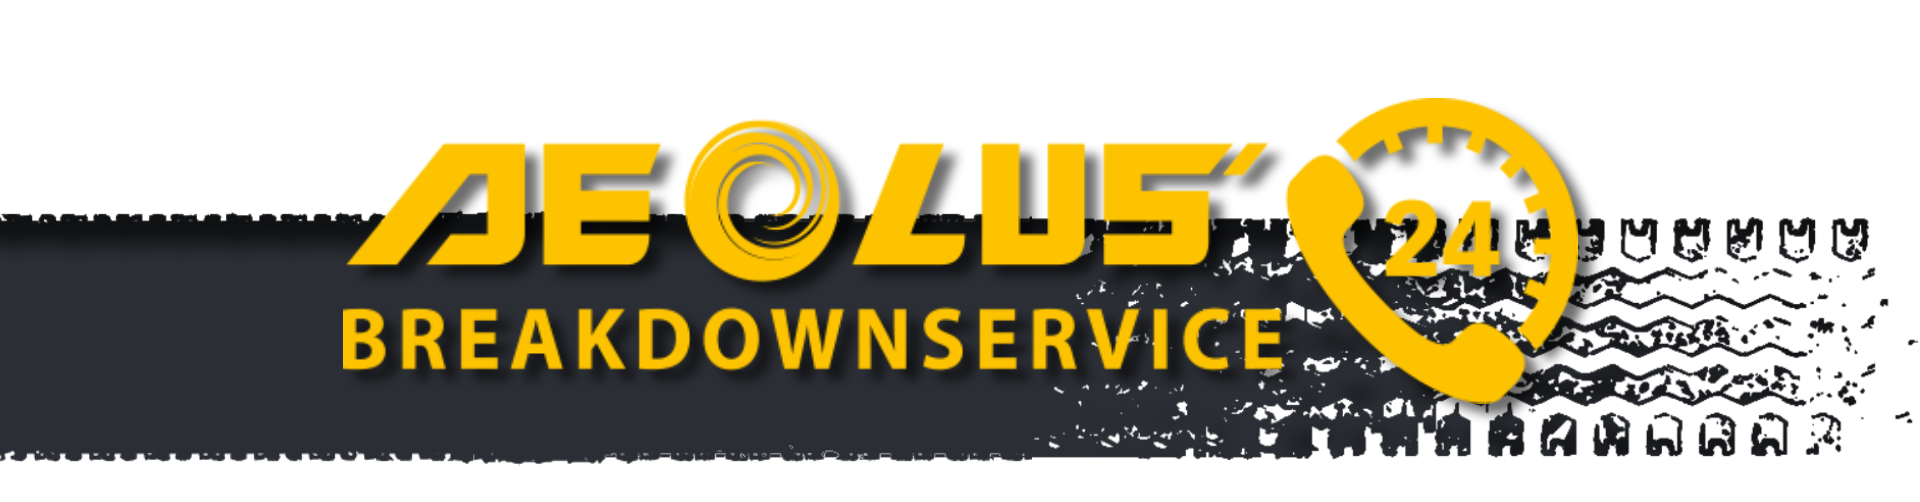 Aeolus Breakdown Service